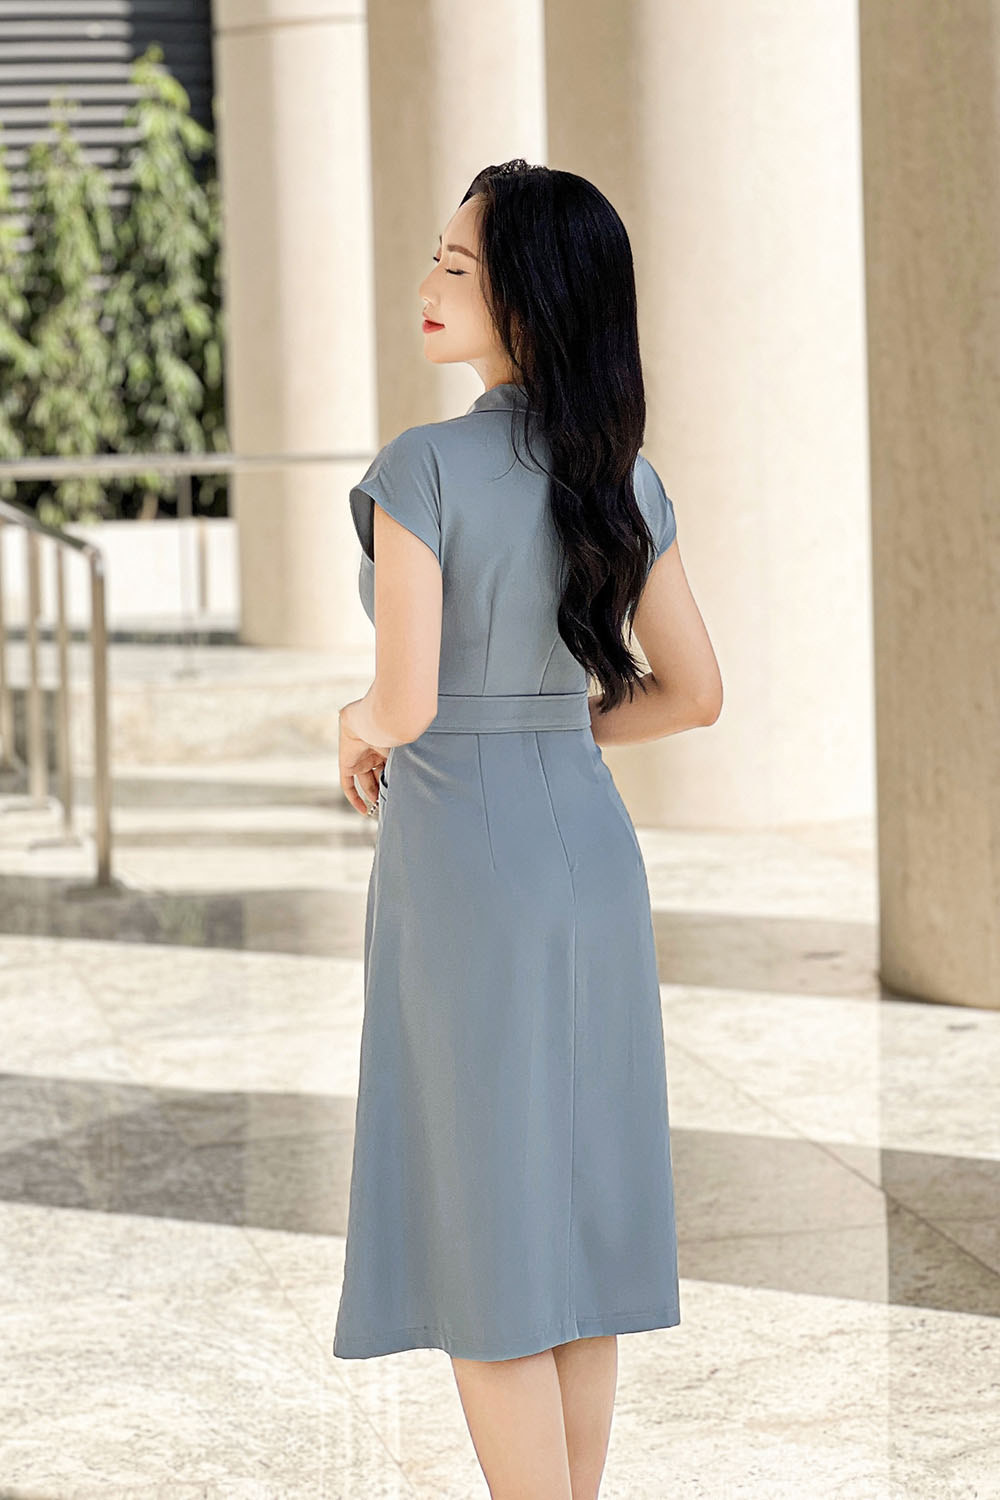 Đầm váy dạ hội màu xanh ngọc cúp ngực DH-059